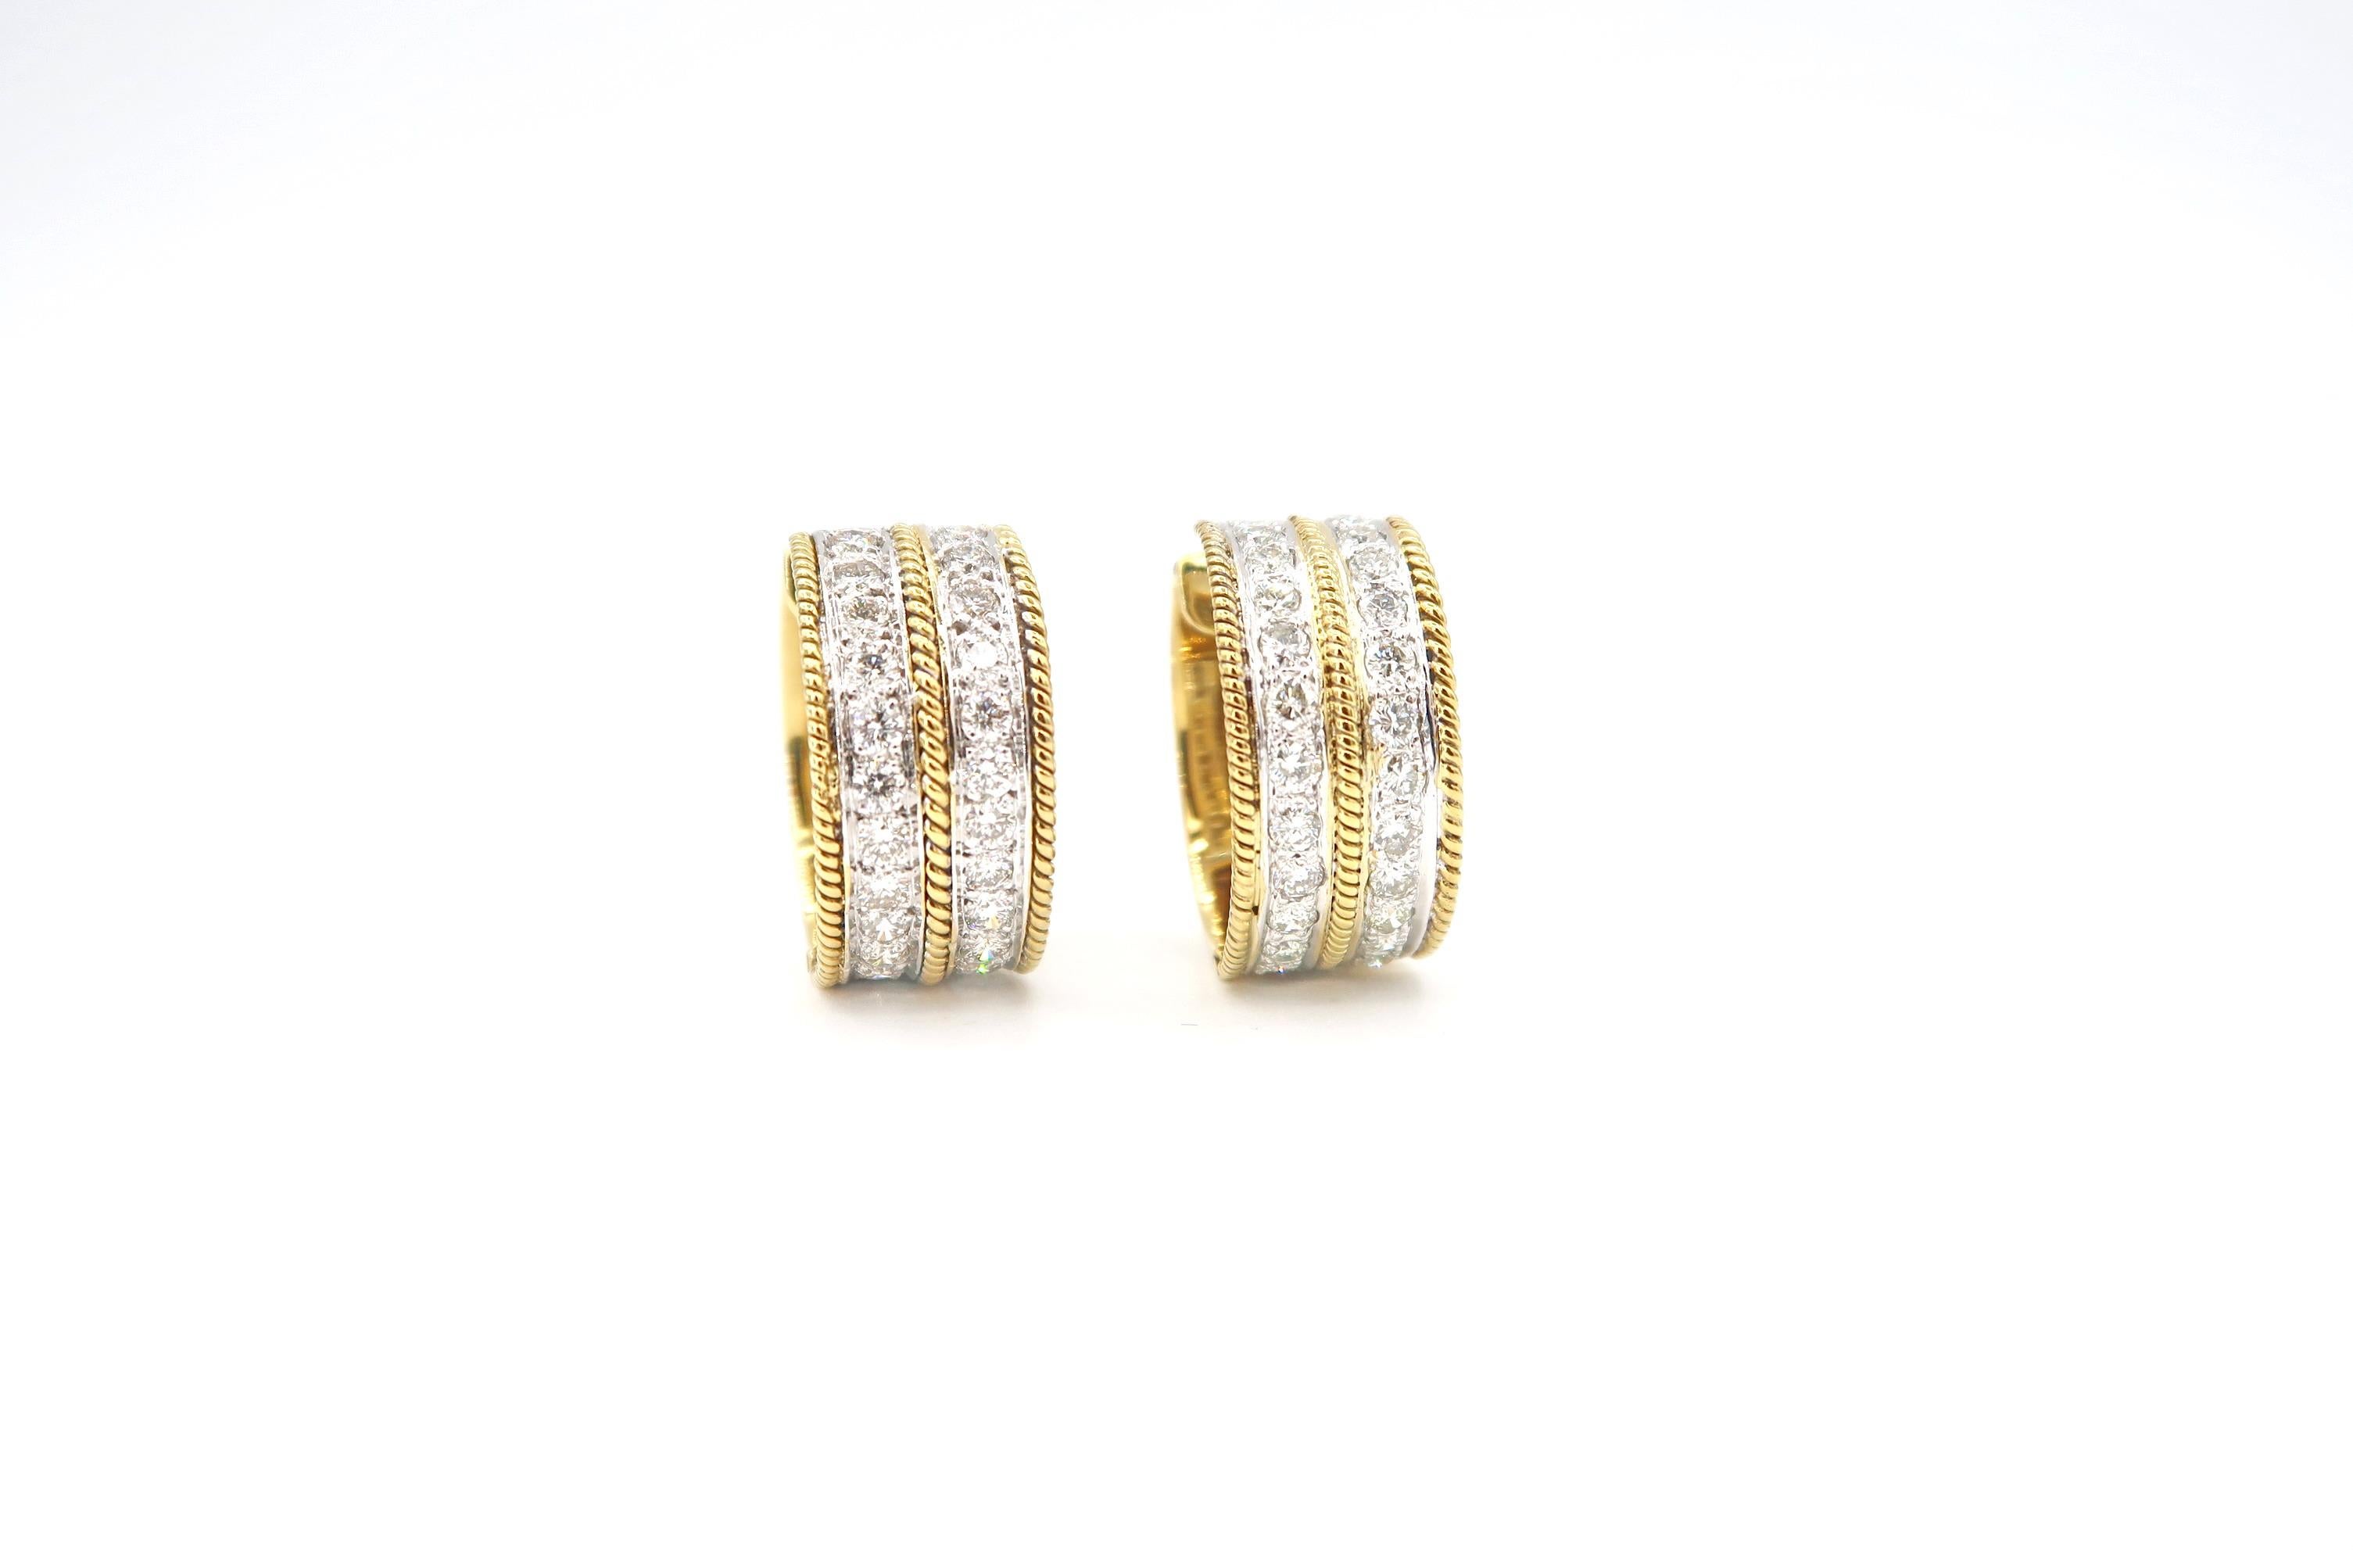 Wide Double Stripe Diamond Huggie Earrings with Milgrain Detail in 14K Gold

Gold: 14K Gold, 16.083 g
Diamond: 2.18 ct

Width: 10mm
Diameter: 21mm